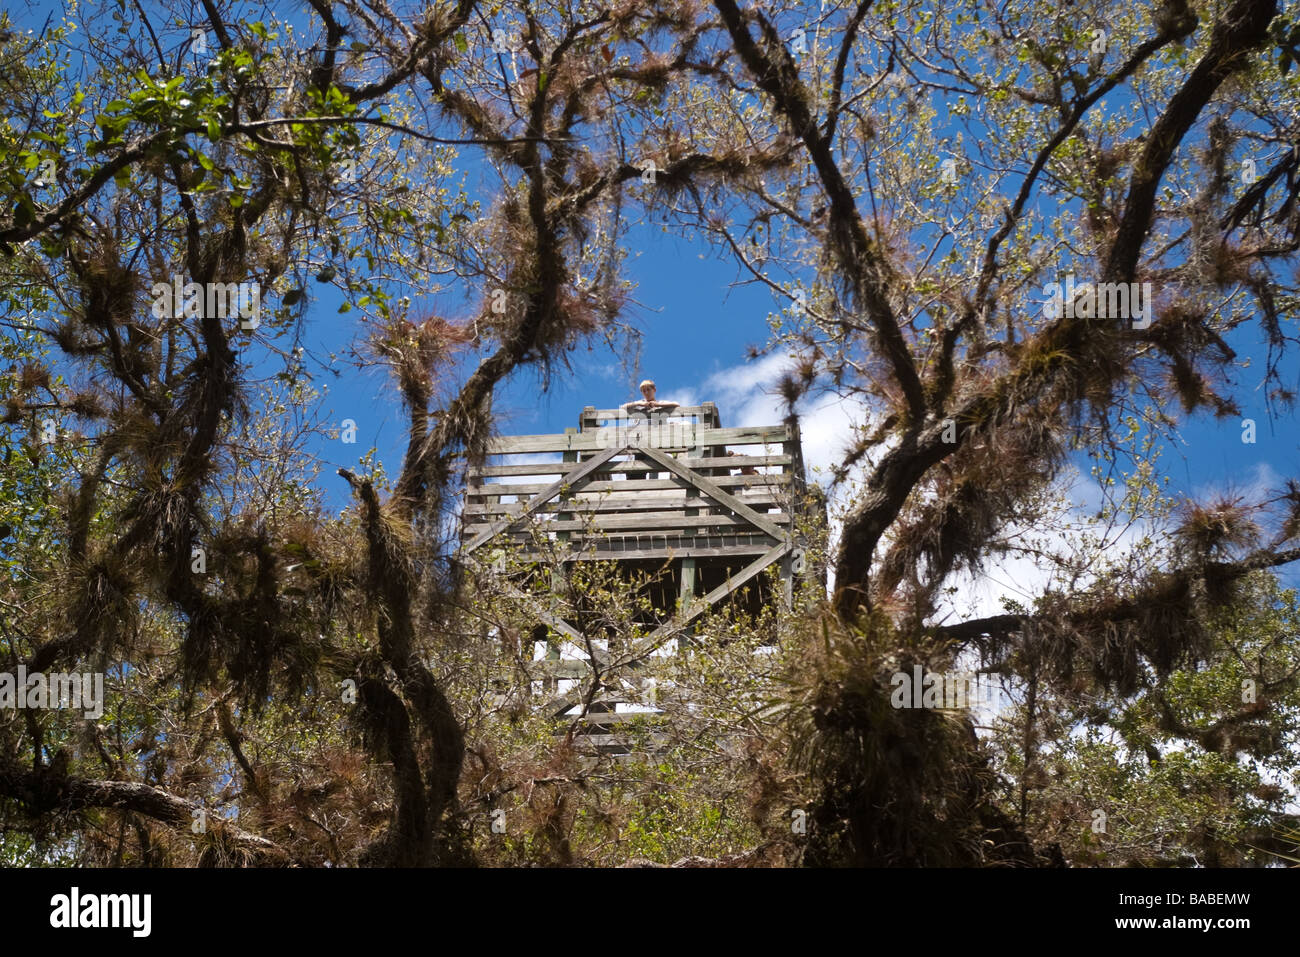 Jeune adolescent scrutant de Lookout Tower vu depuis le niveau du sol, dans la Floride Myakka State Park Banque D'Images